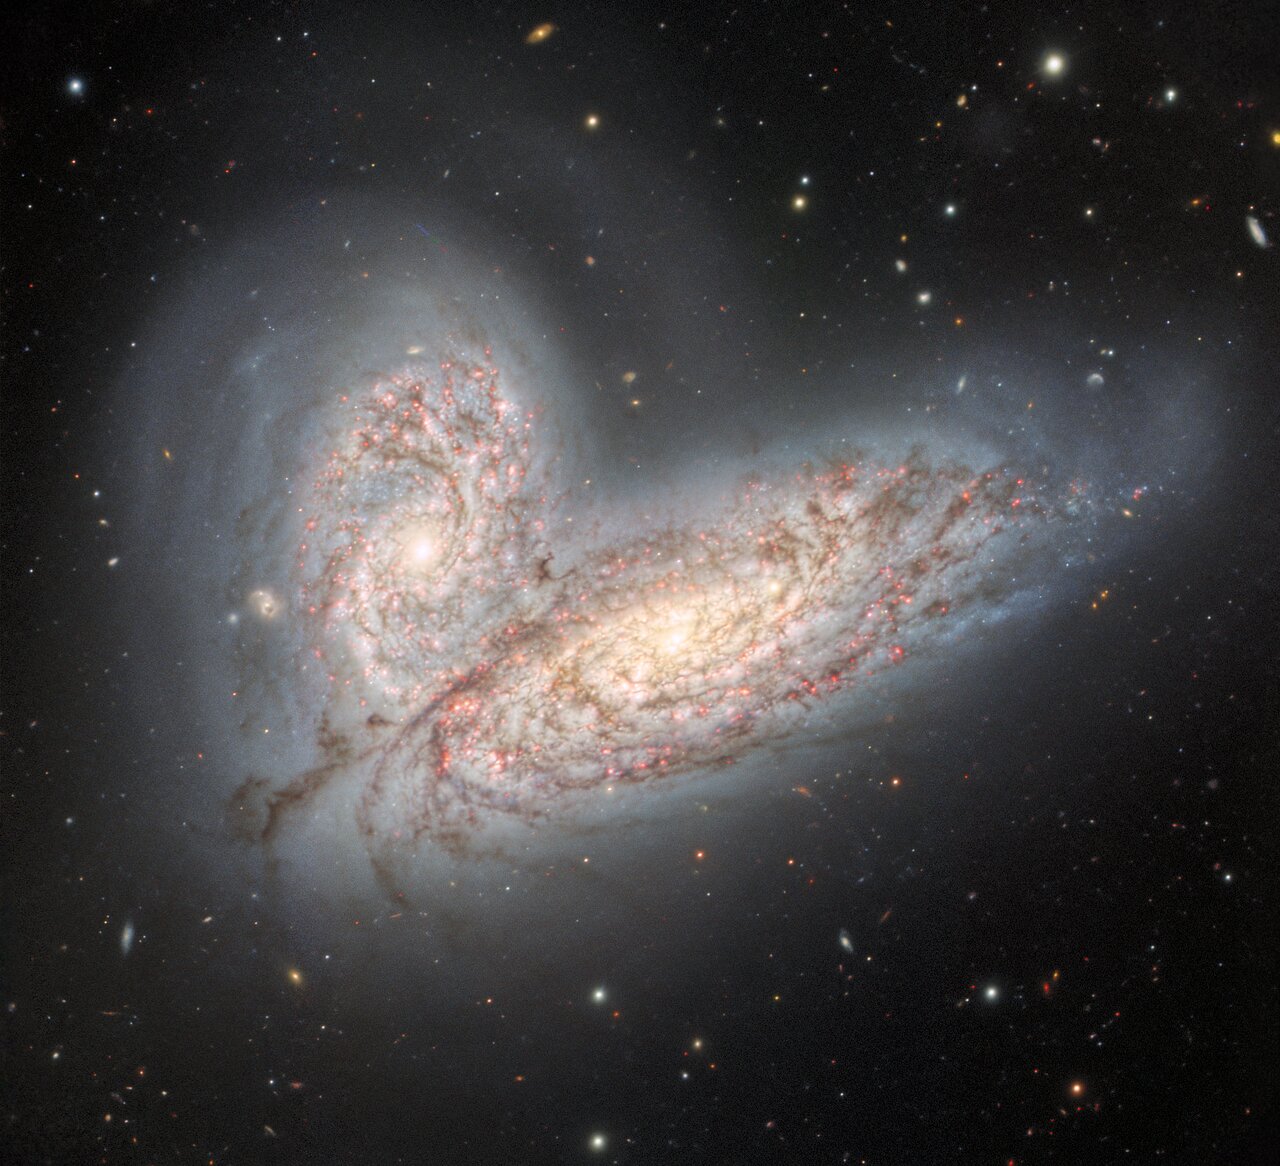 两个螺旋星系NGC 4568和NGC 4567激烈合并的新图像预示银河系的命运